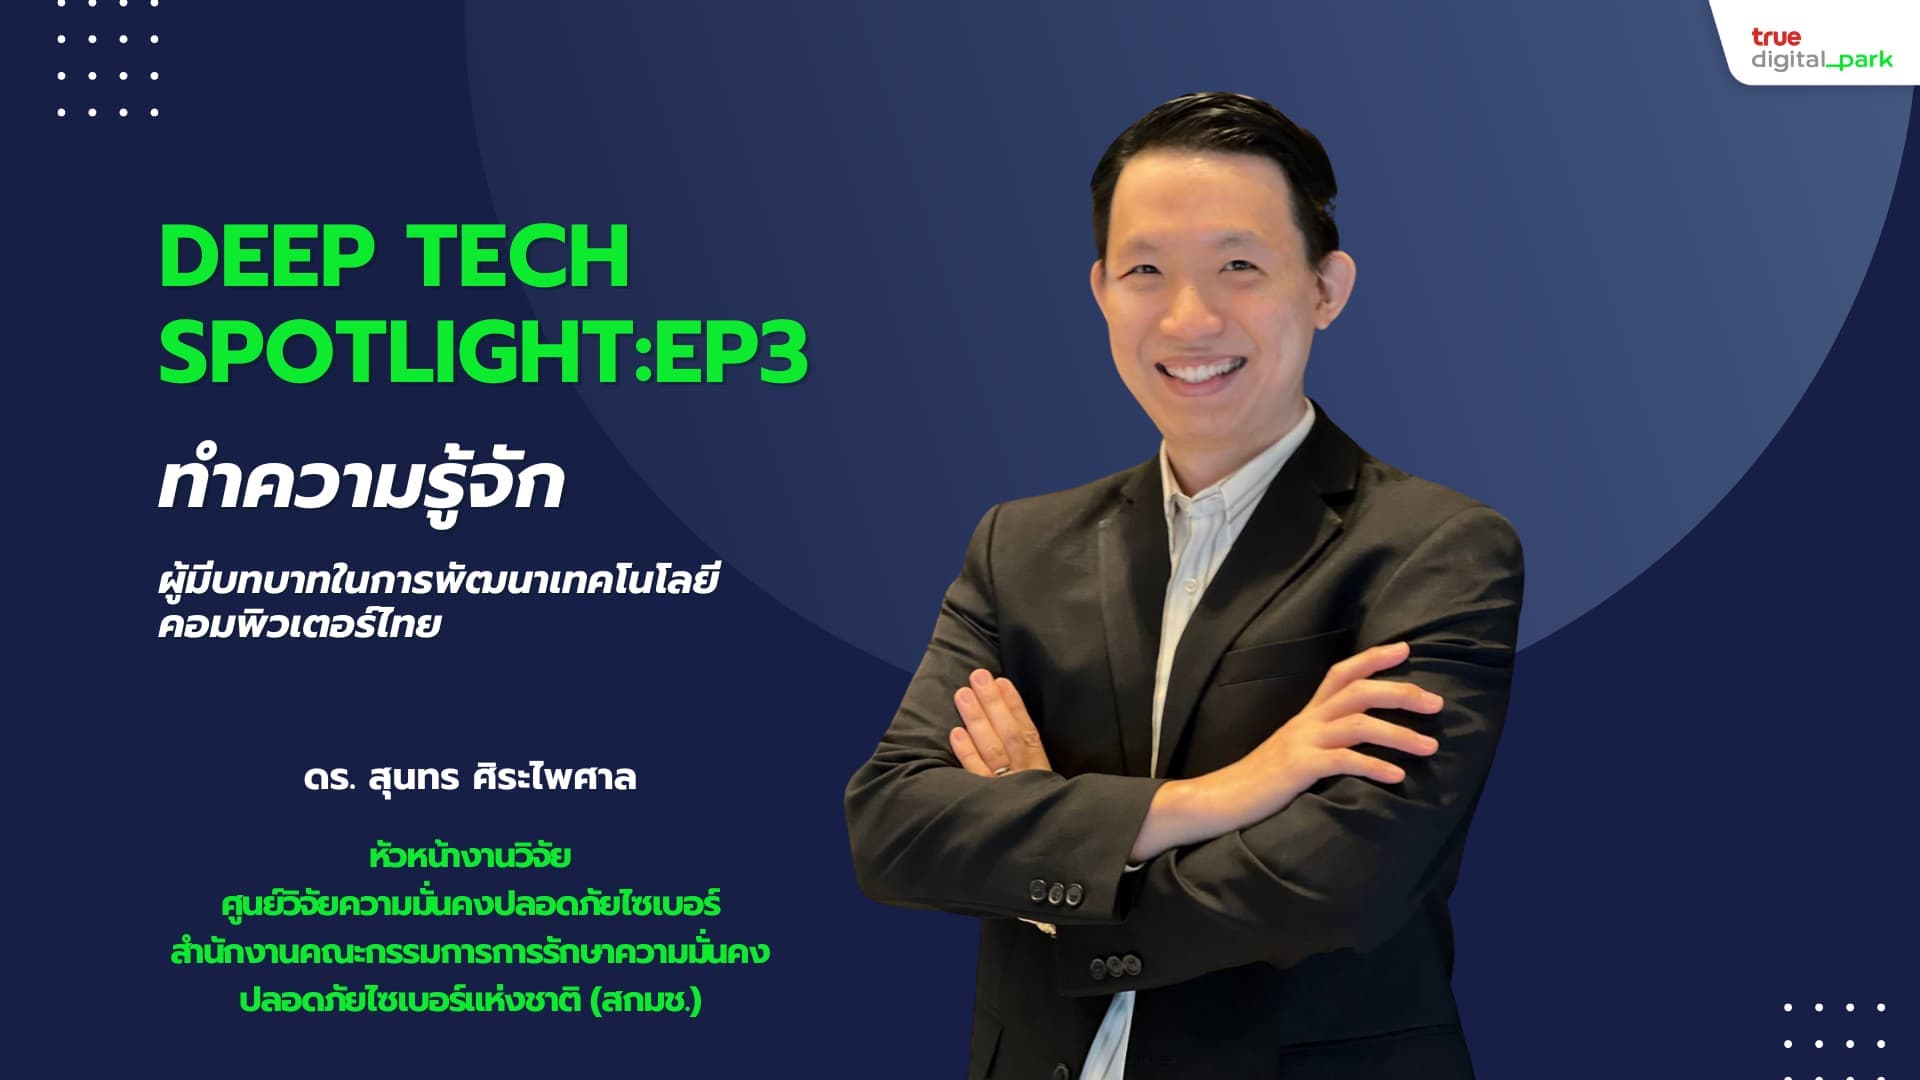 Deep Tech Spotlight Ep. 3: ดร. สุนทร ศิระไพศาล ผู้มีบทบาทในการพัฒนาเทคโนโลยีคอมพิวเตอร์ไทย